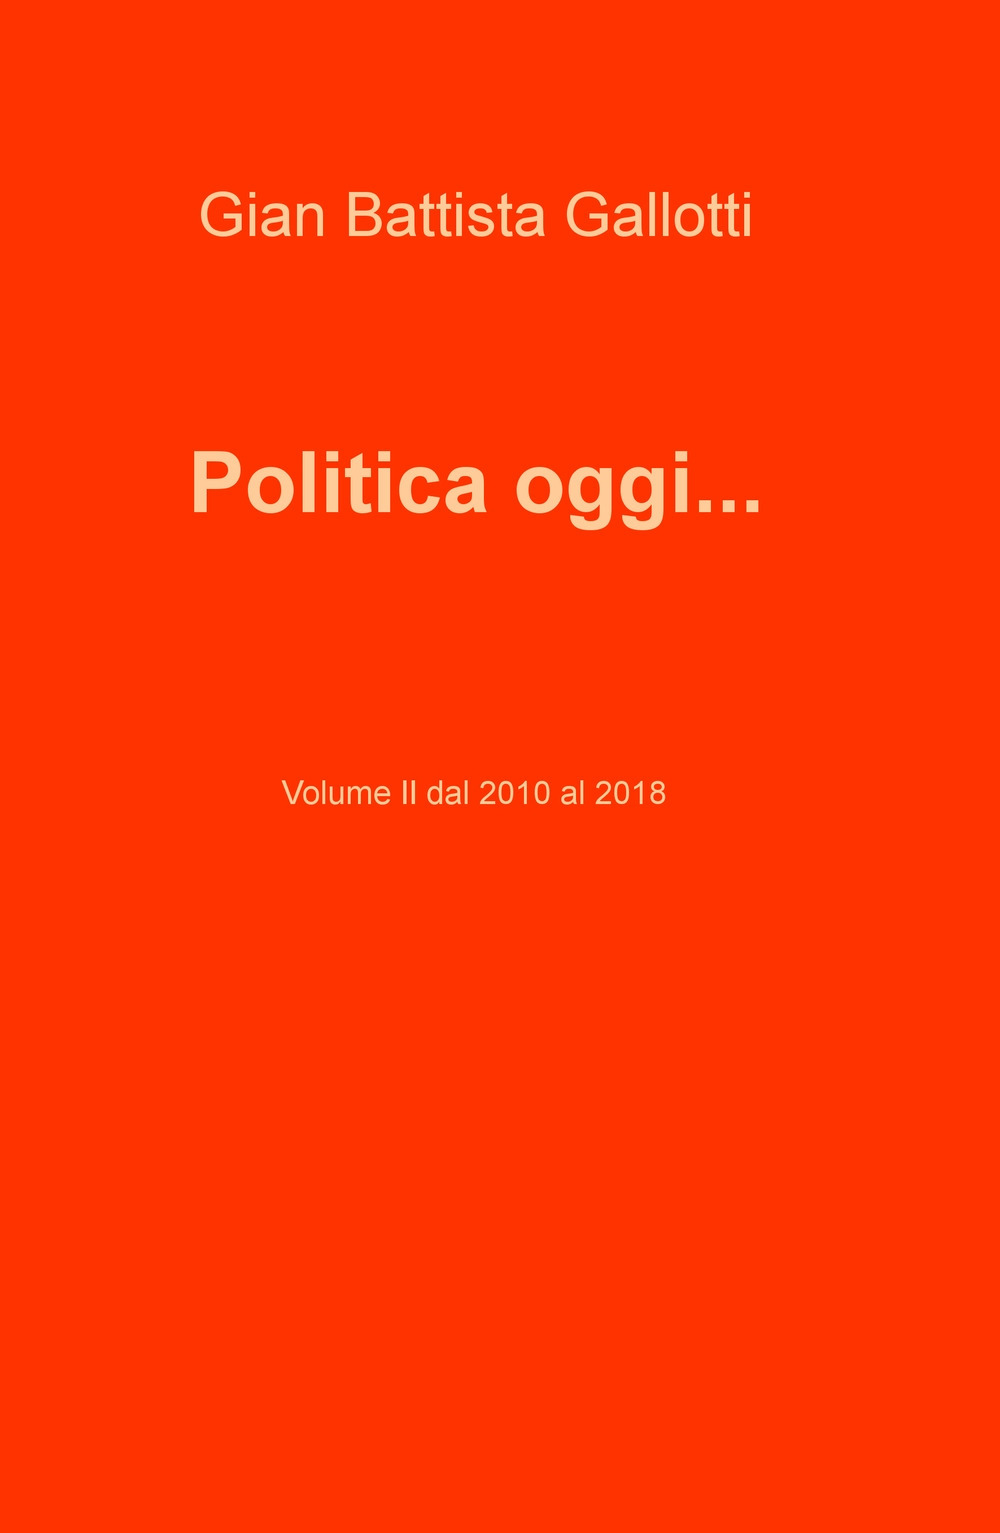 Image of Politica oggi.... Vol. 2: Dal 2010 al 2018.